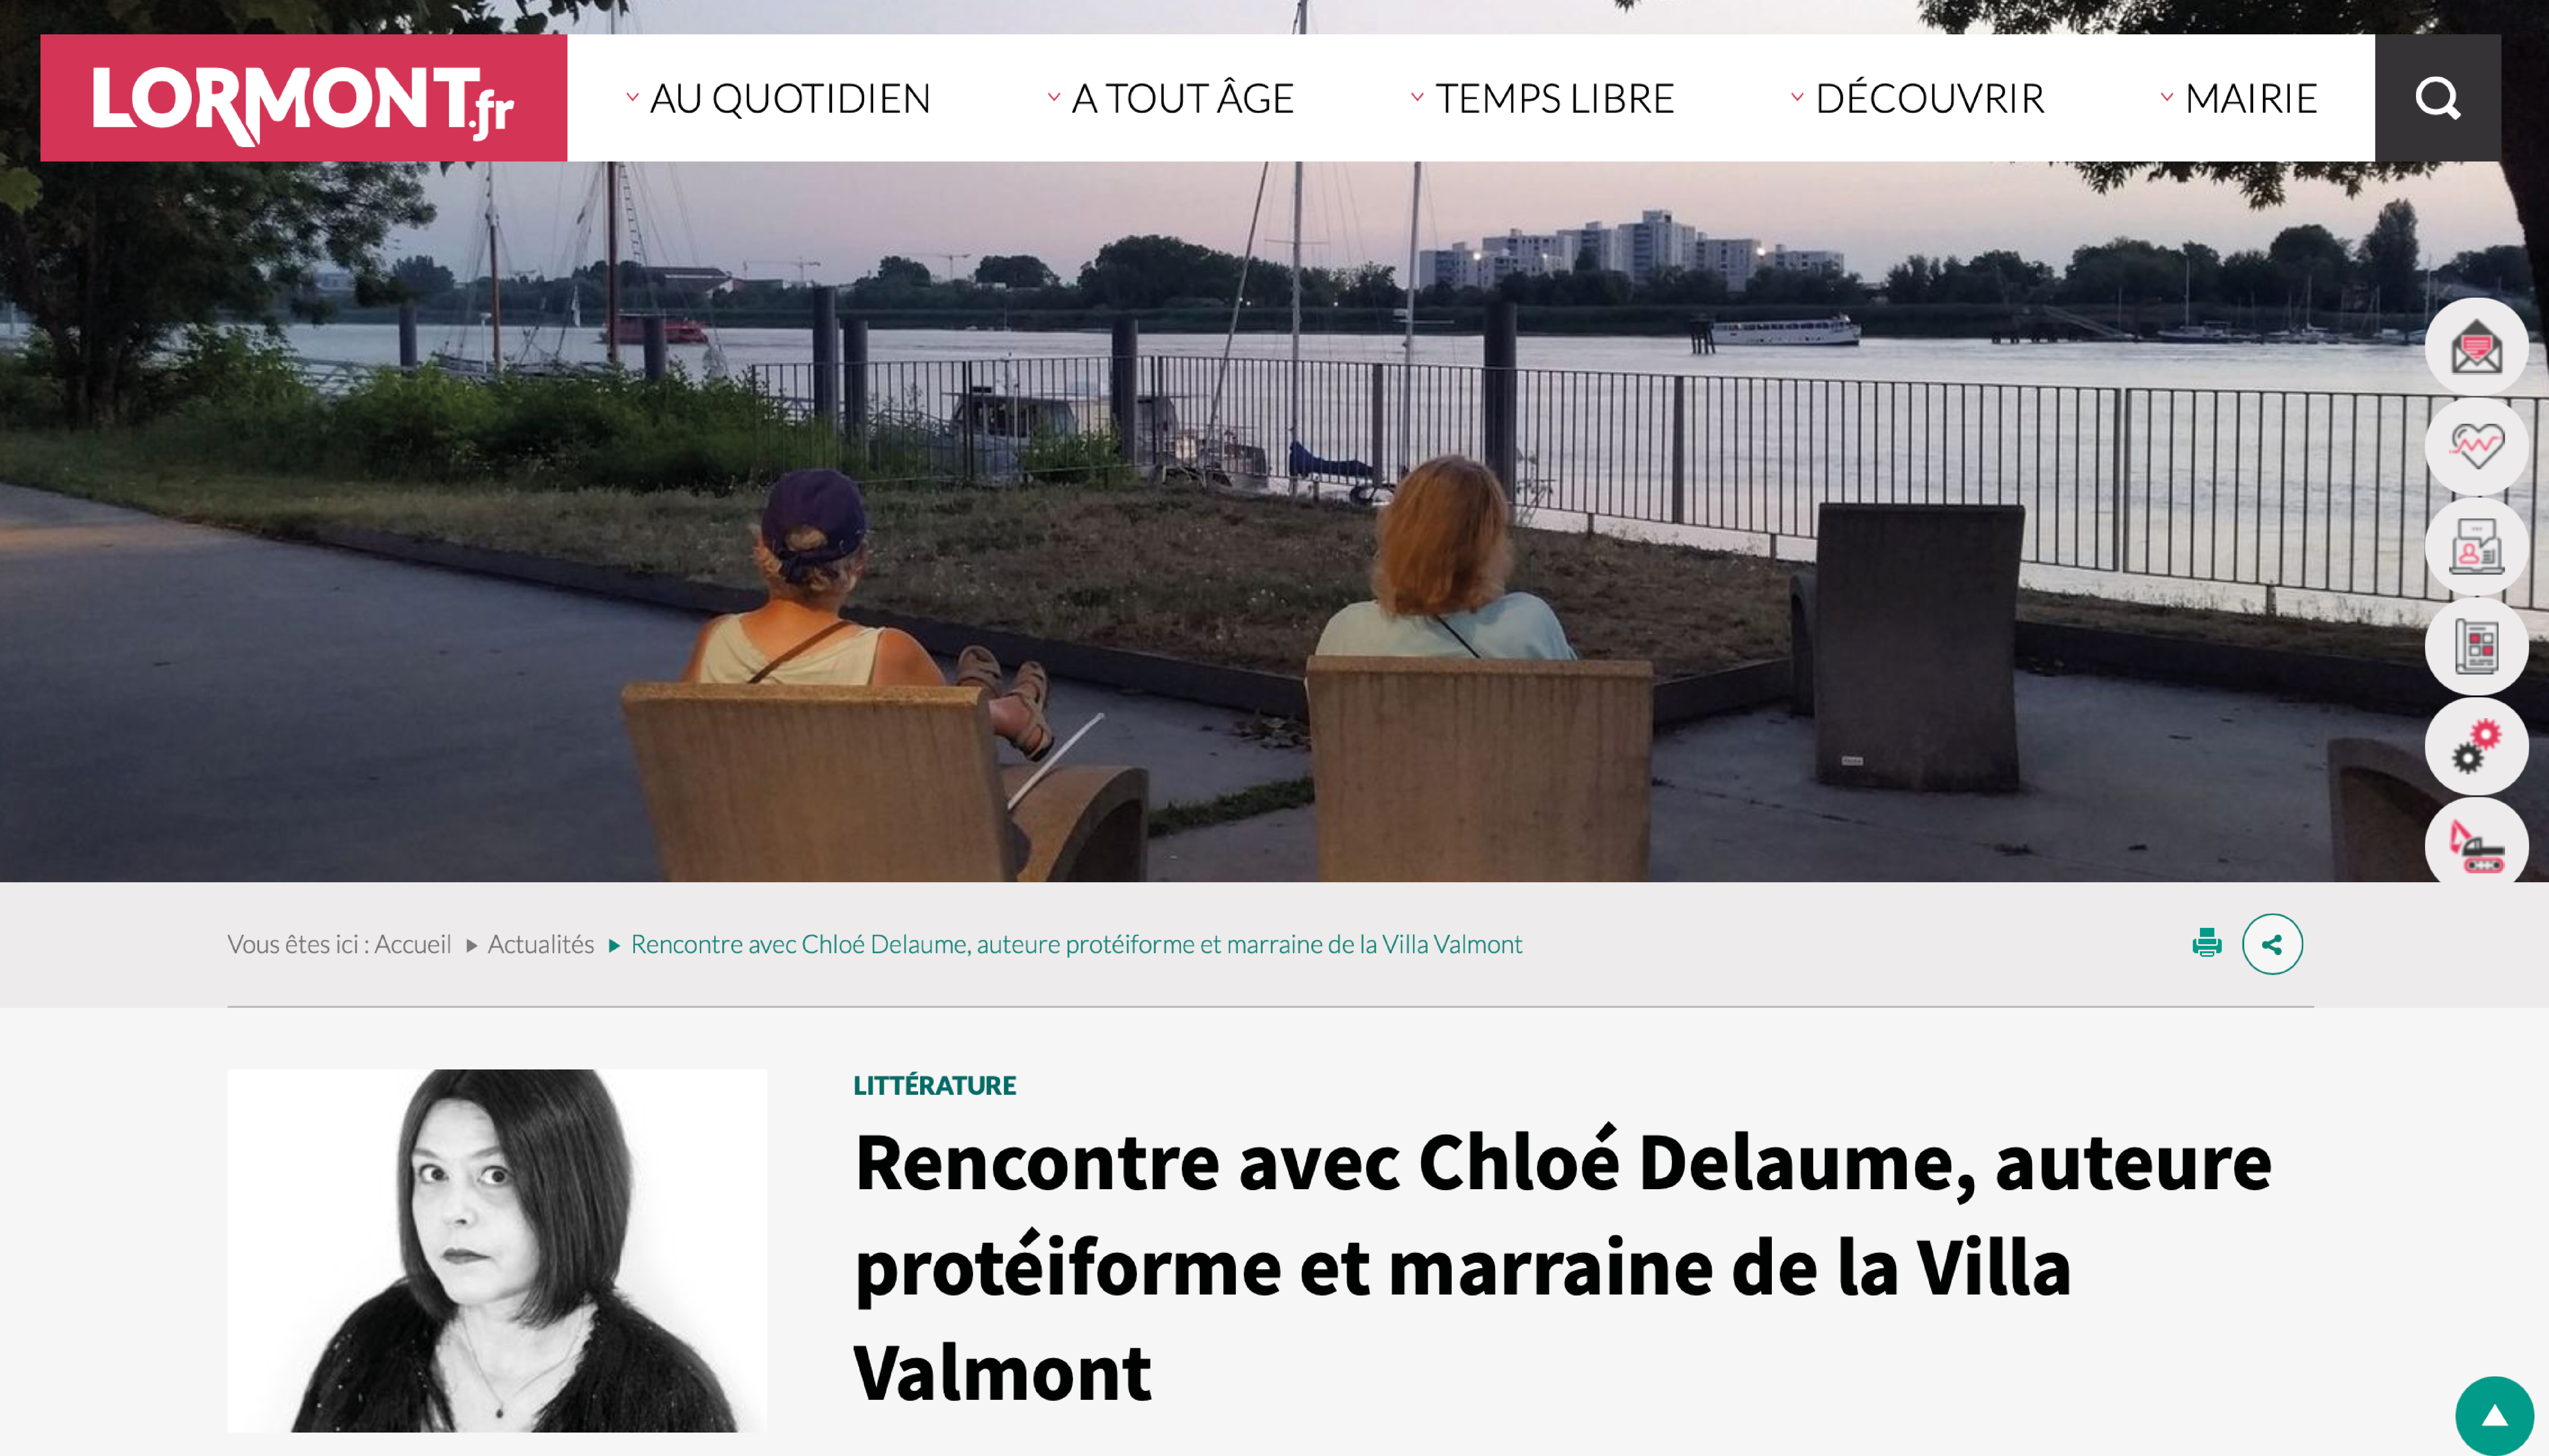 https://www.lormont.fr/actualites-109/rencontre-avec-chloe-delaume-auteure-proteiforme-et-marraine-de-la-villa-valmont-5456.html